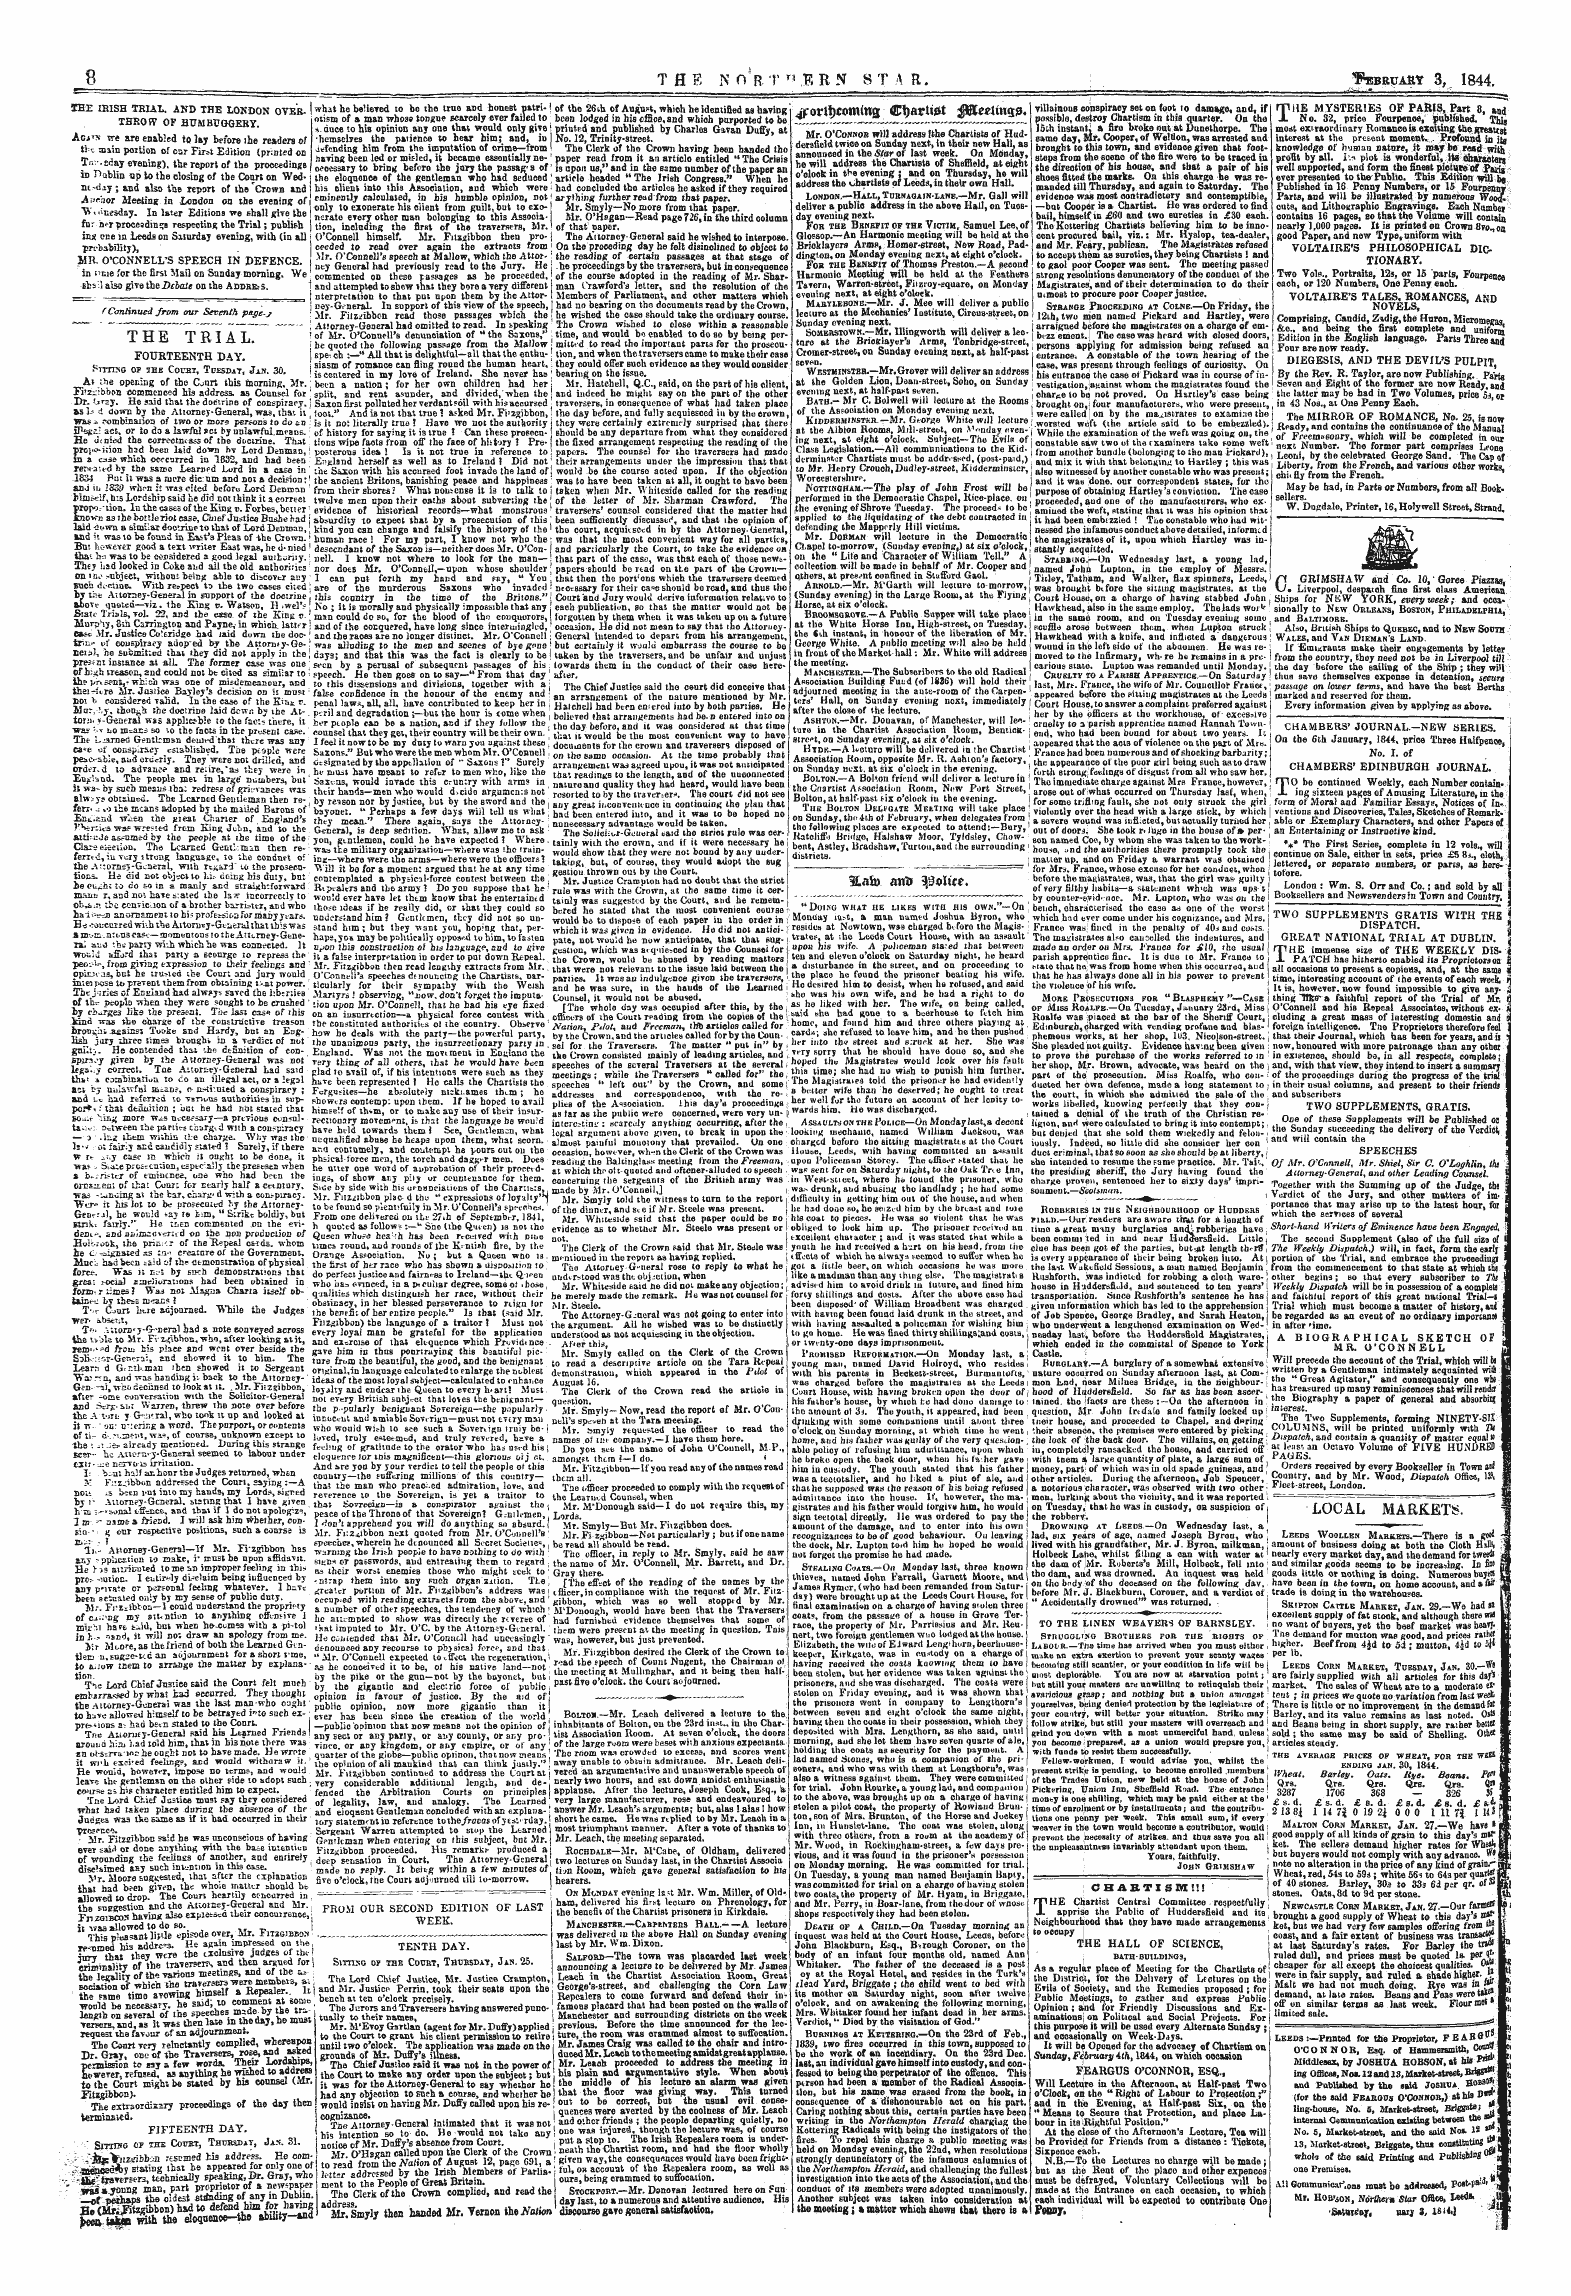 Northern Star (1837-1852): jS F Y, 1st edition - 4*:Ortf)Com(W3 ©Tjatrttet $&Et\I\%%9.